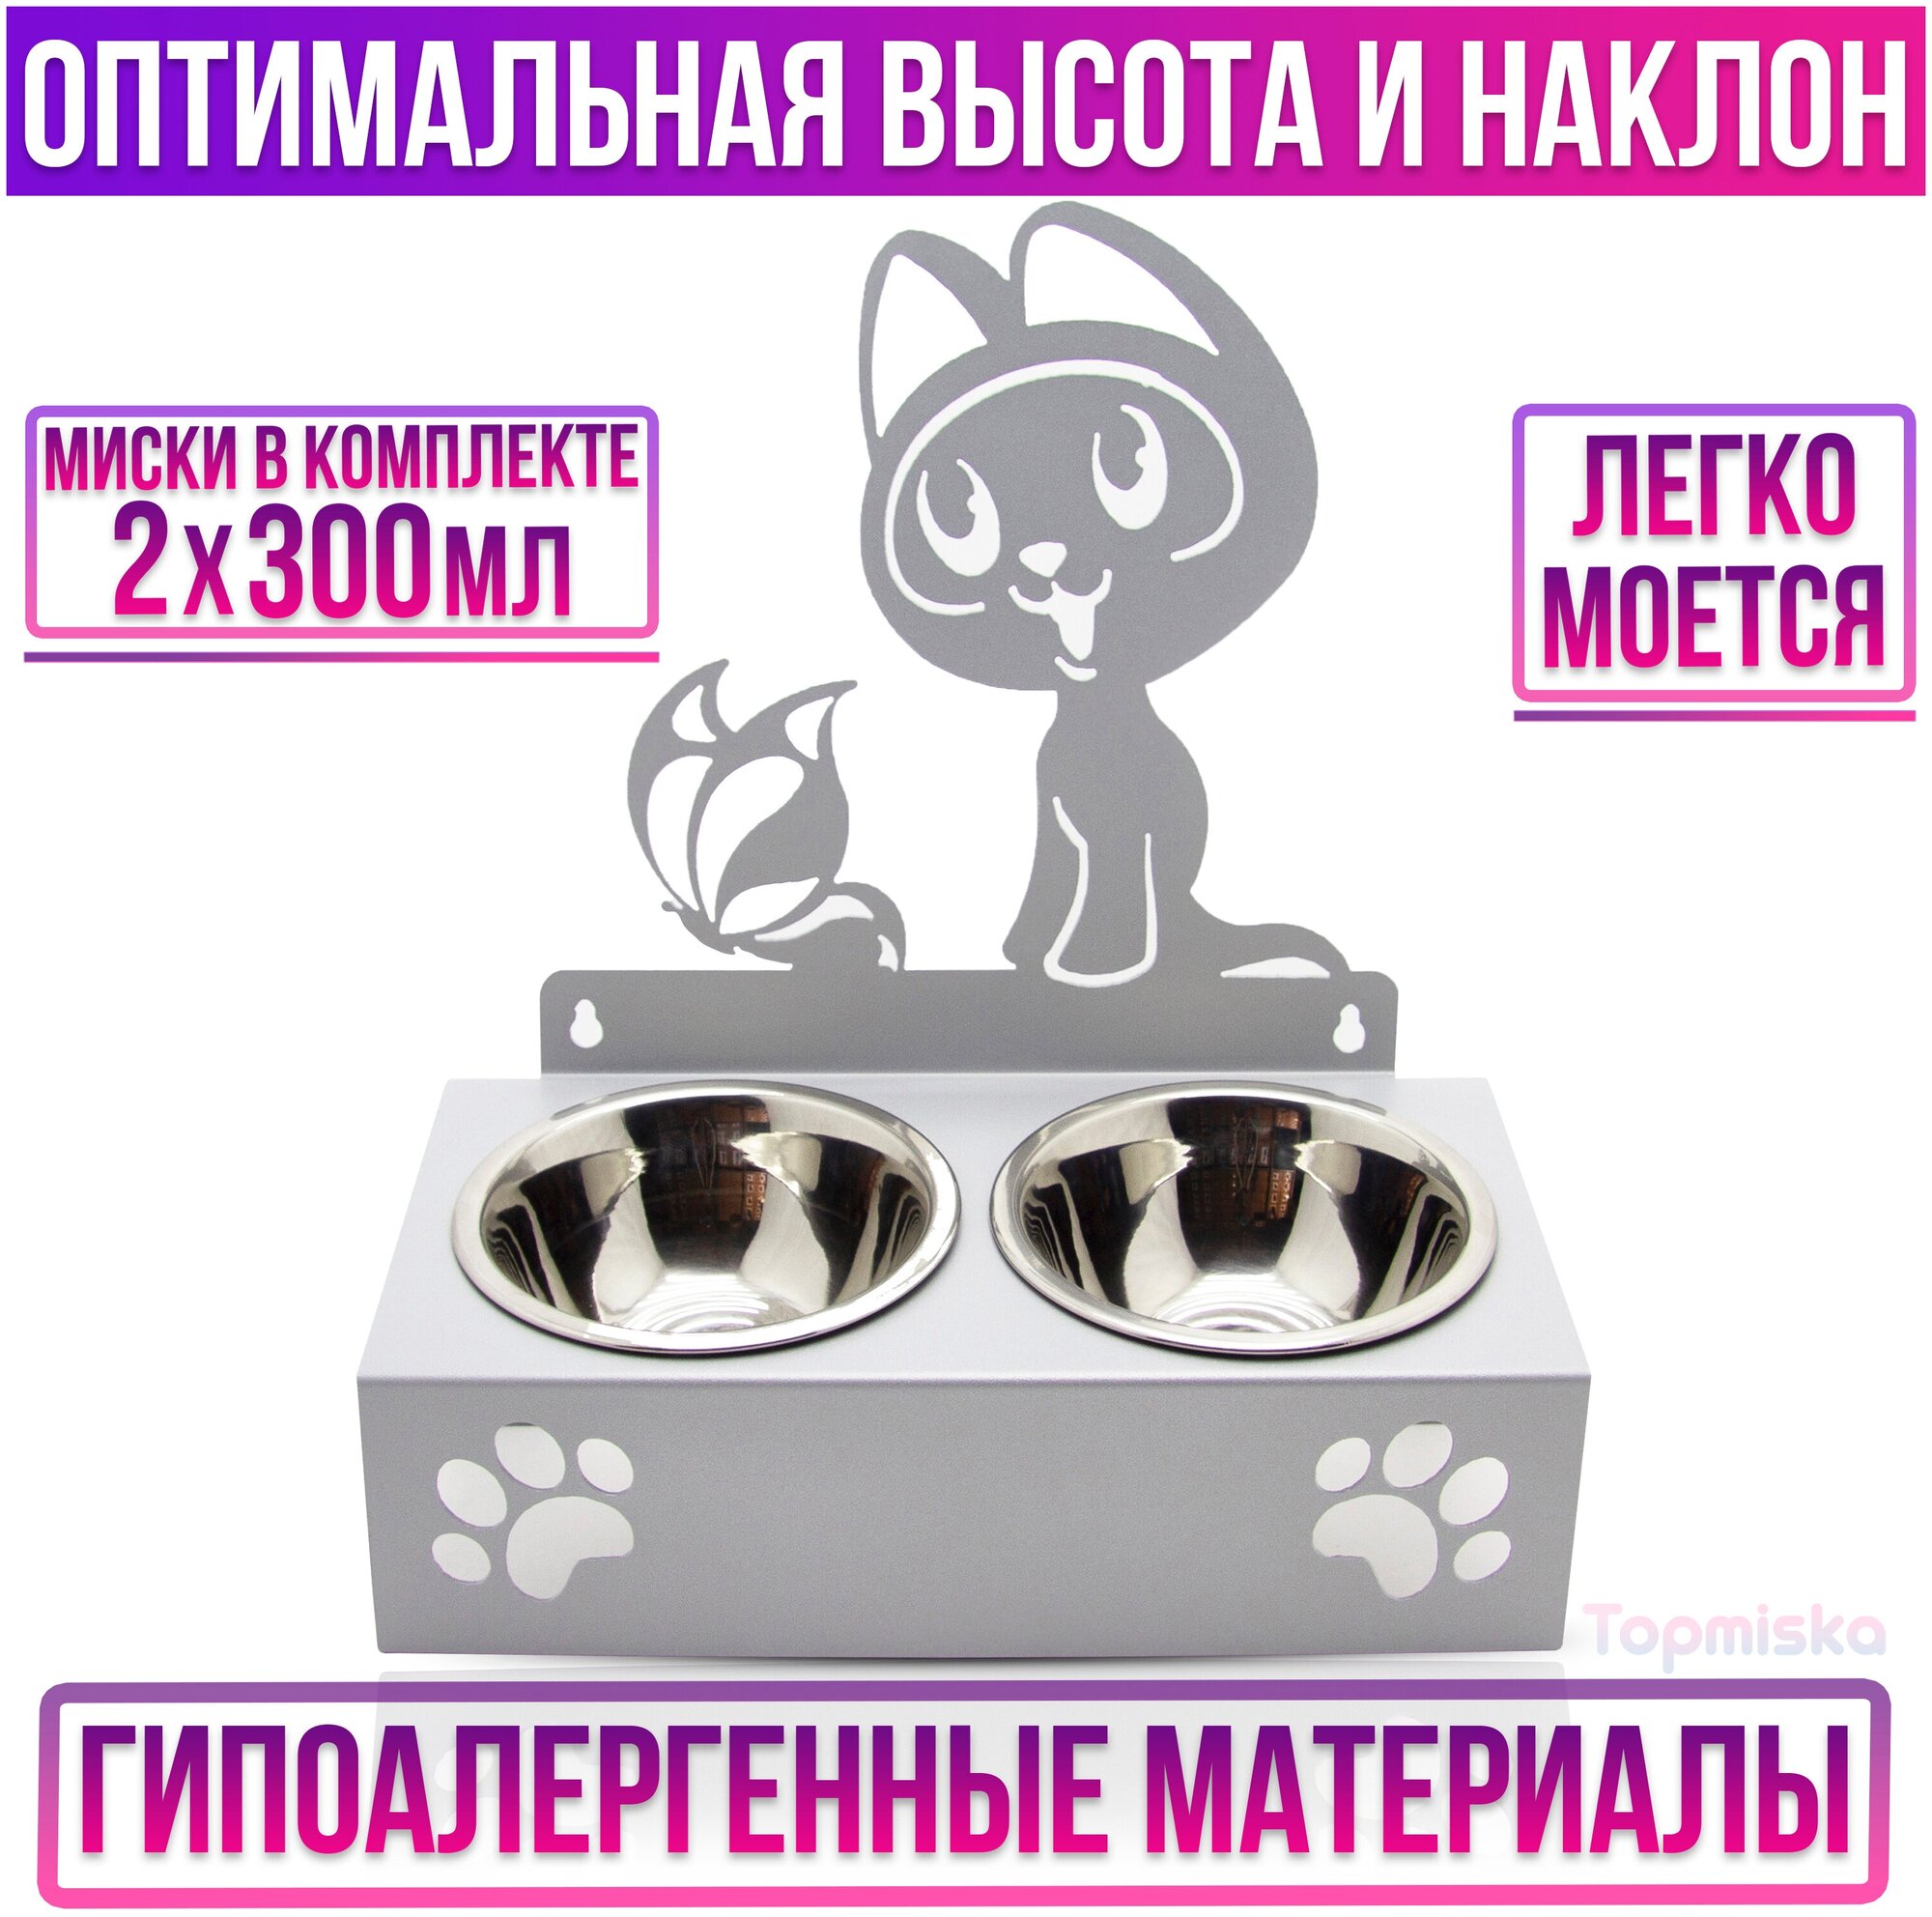 Подставка для мисок двойная с наклоном Topmiska, миски 2х300мл, изображение Котёнок гав, цвет серый - фотография № 2